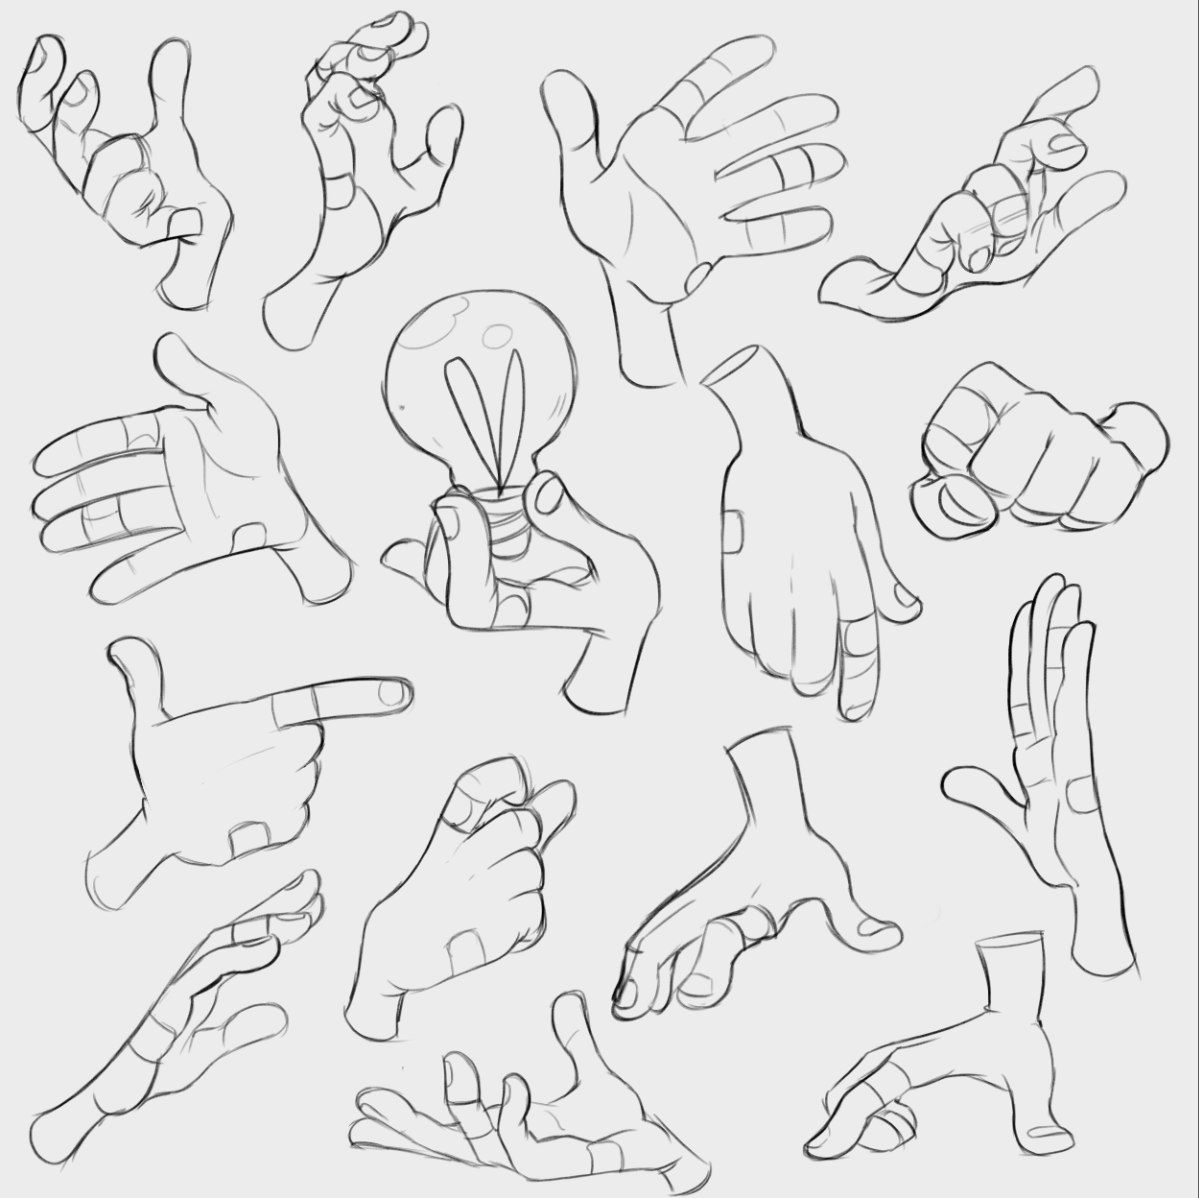 Рисование мультяшных рук